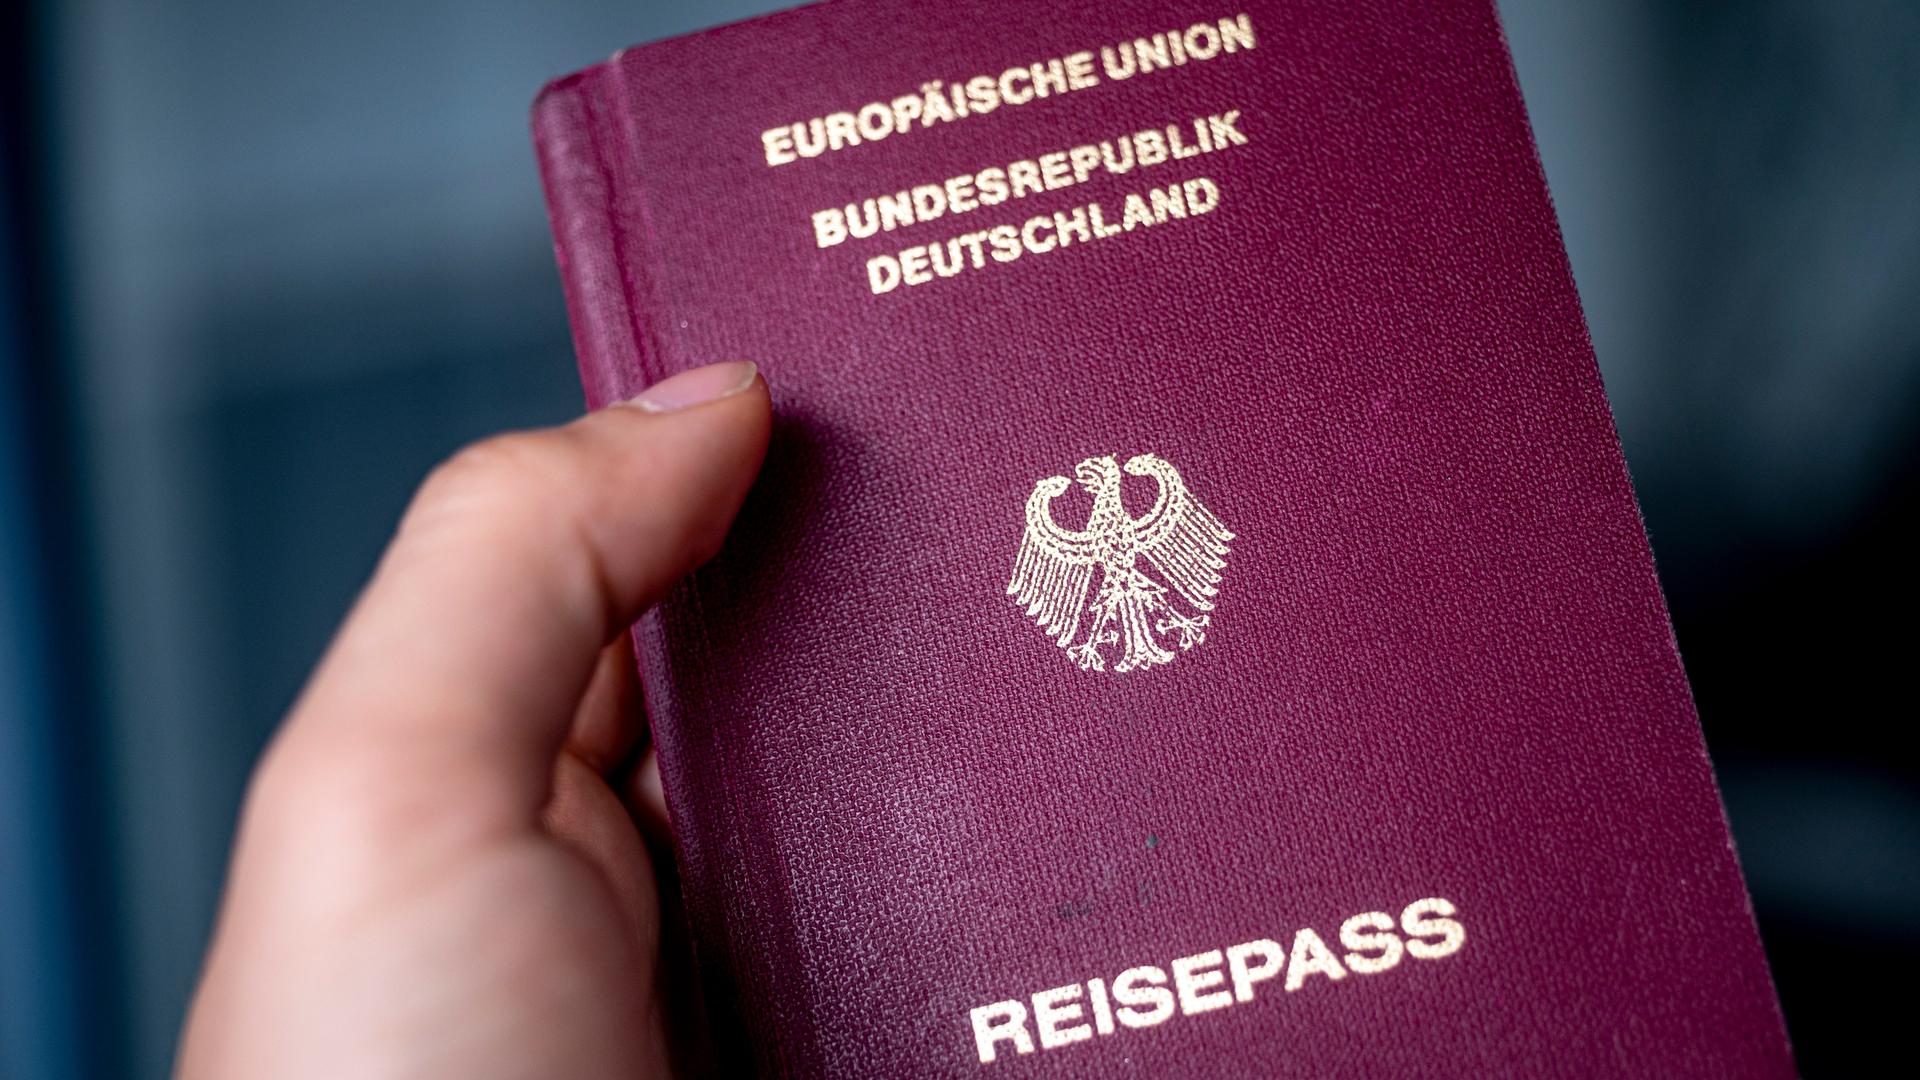 Ein dunkelrot eingebundener Pass mit folgender Prägung in goldenen Buchstaben: Europäische Union. Bundesrepublik Deutschland. Reisepass und dem Bundesadler.